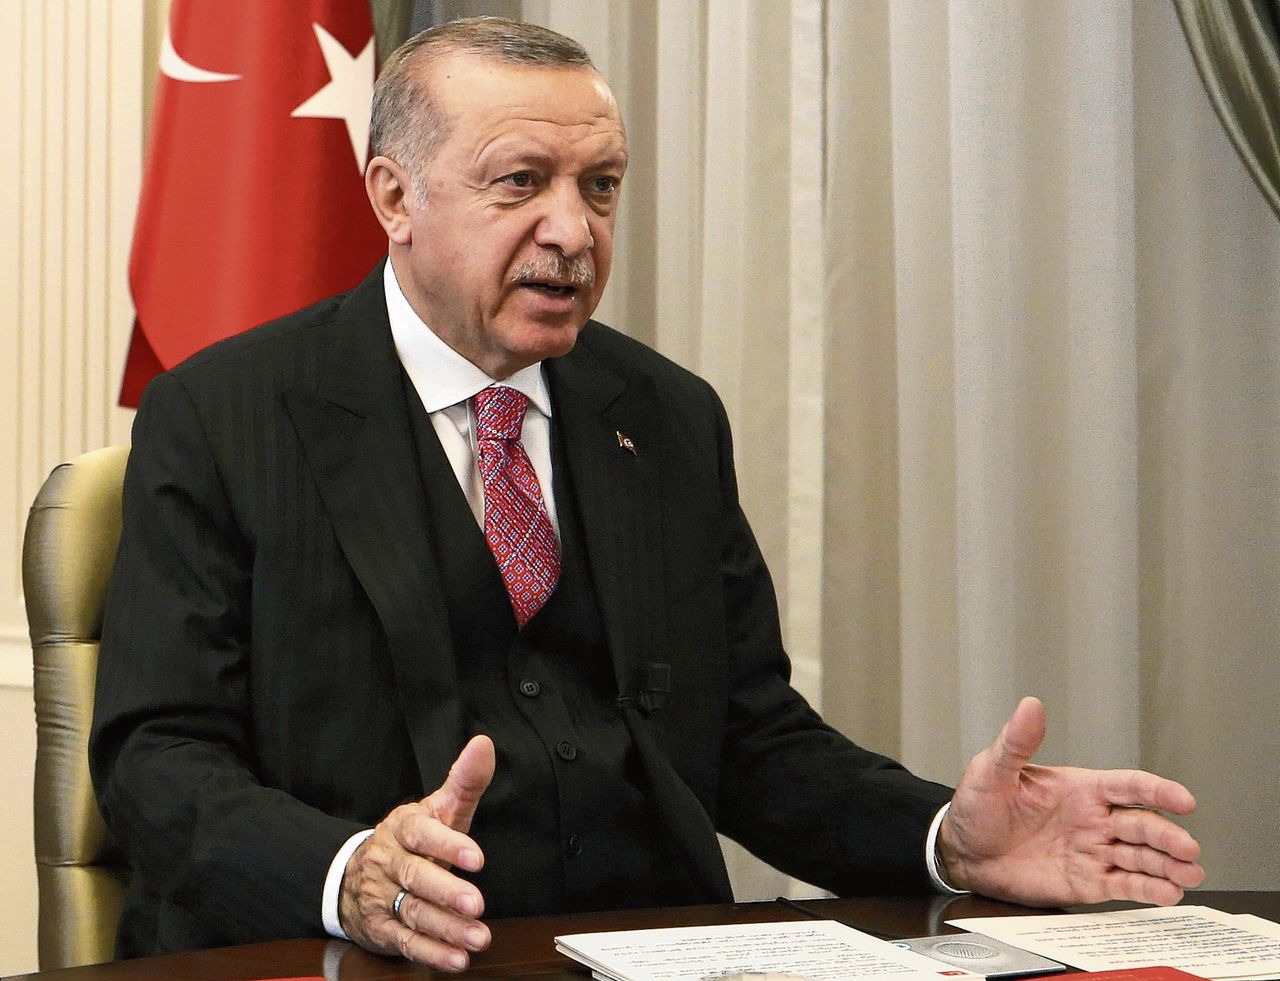 De Turkse president Erdogan pleit voor meer overheidscontrole op sociale media nadat zijn schoonzoon beledigende reacties kreeg op Twitter.